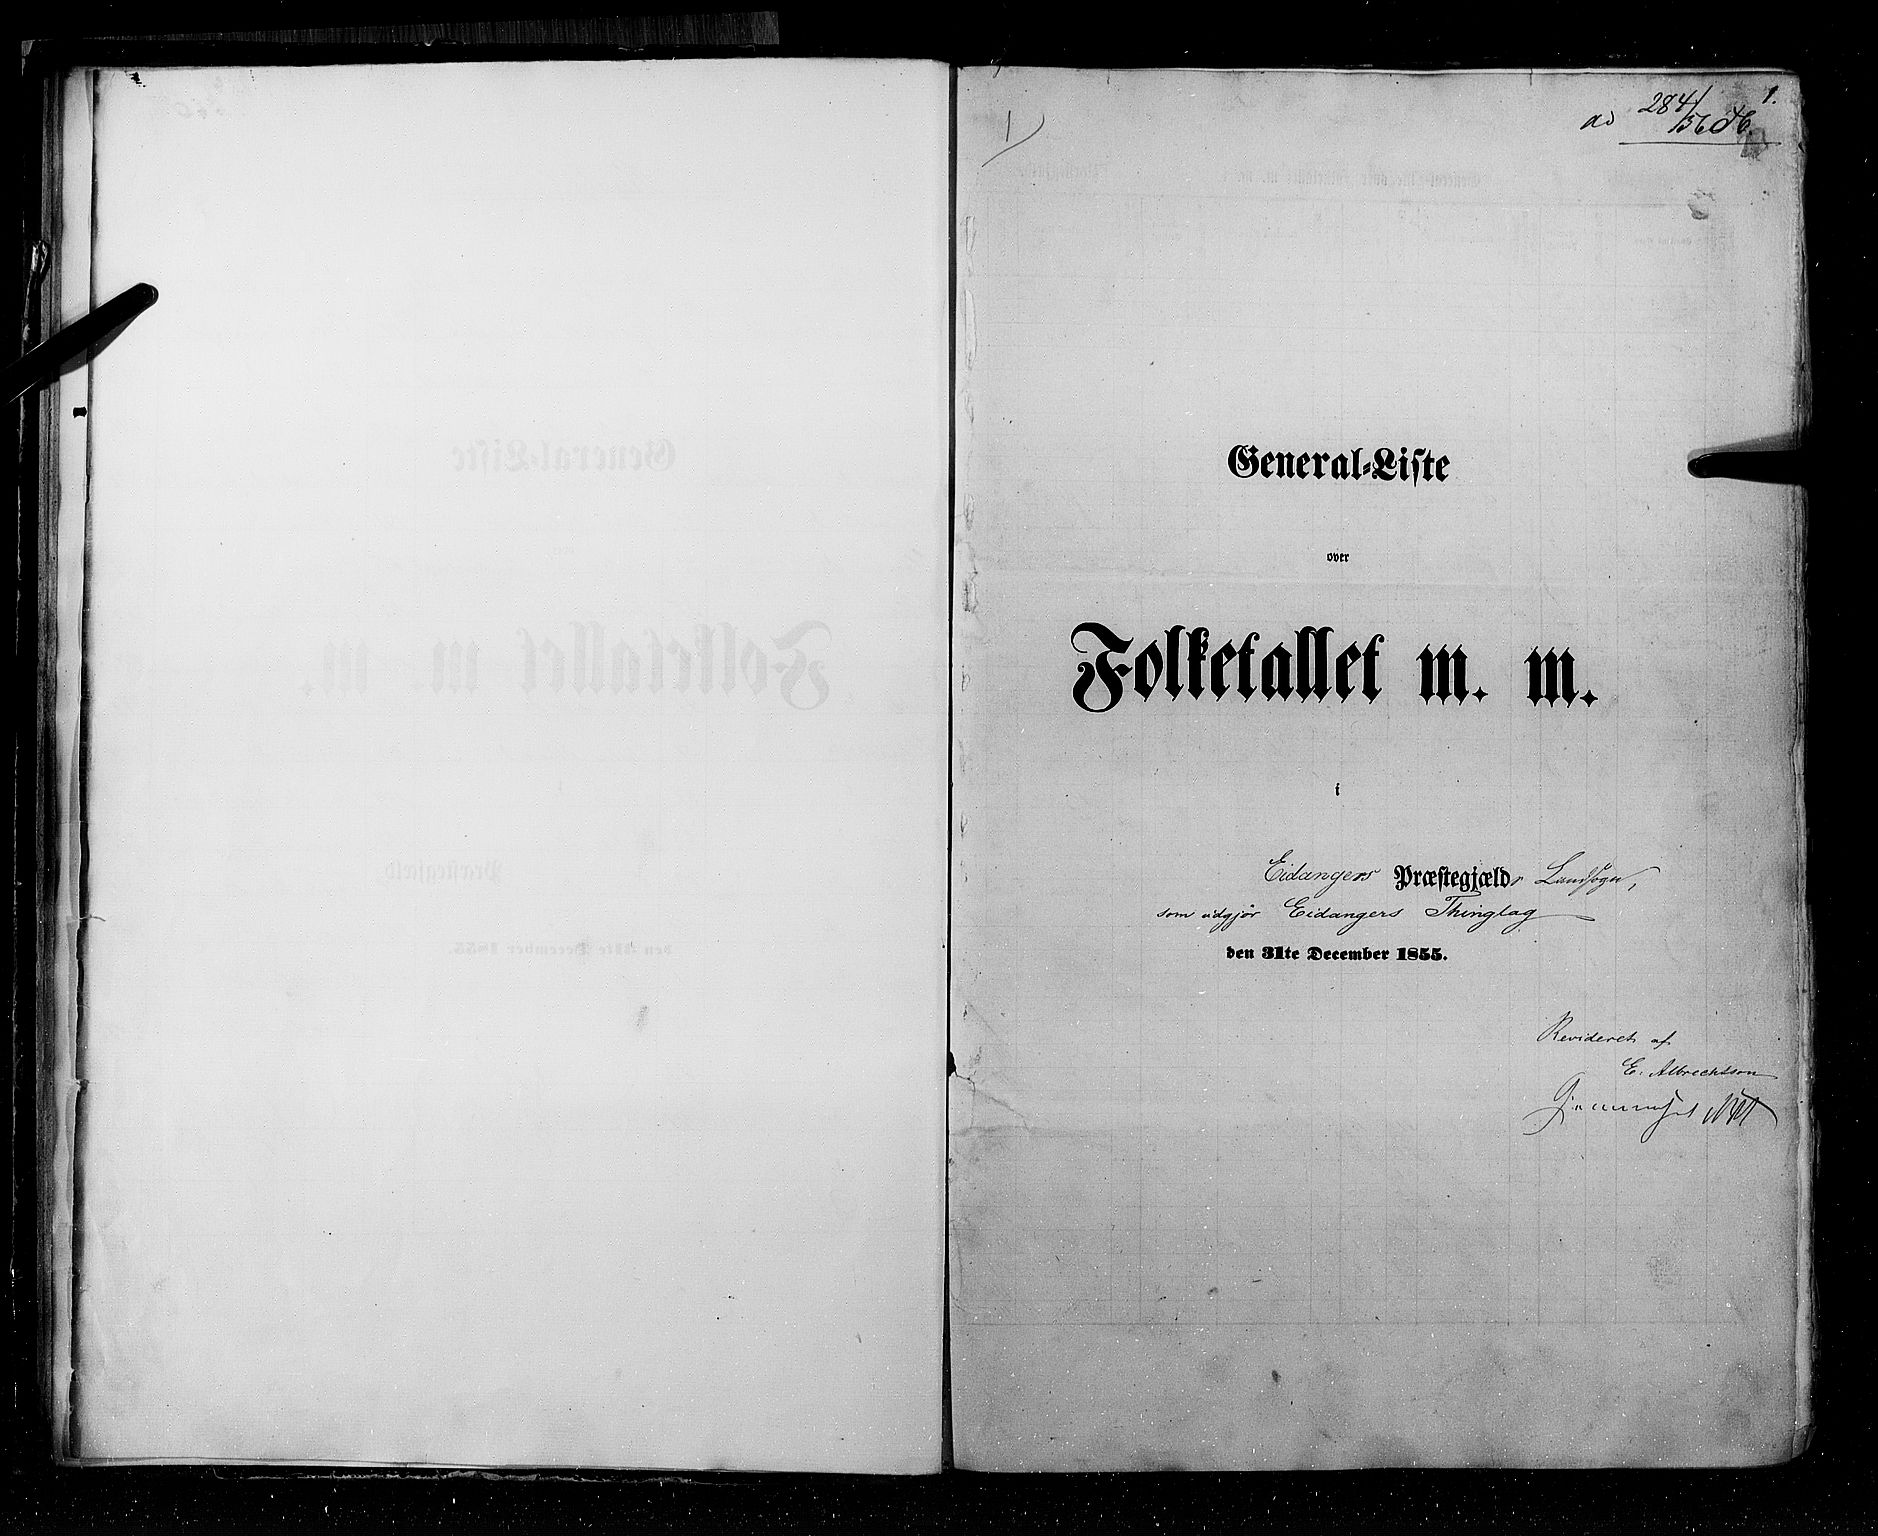 RA, Folketellingen 1855, bind 3: Bratsberg amt, Nedenes amt og Lister og Mandal amt, 1855, s. 1